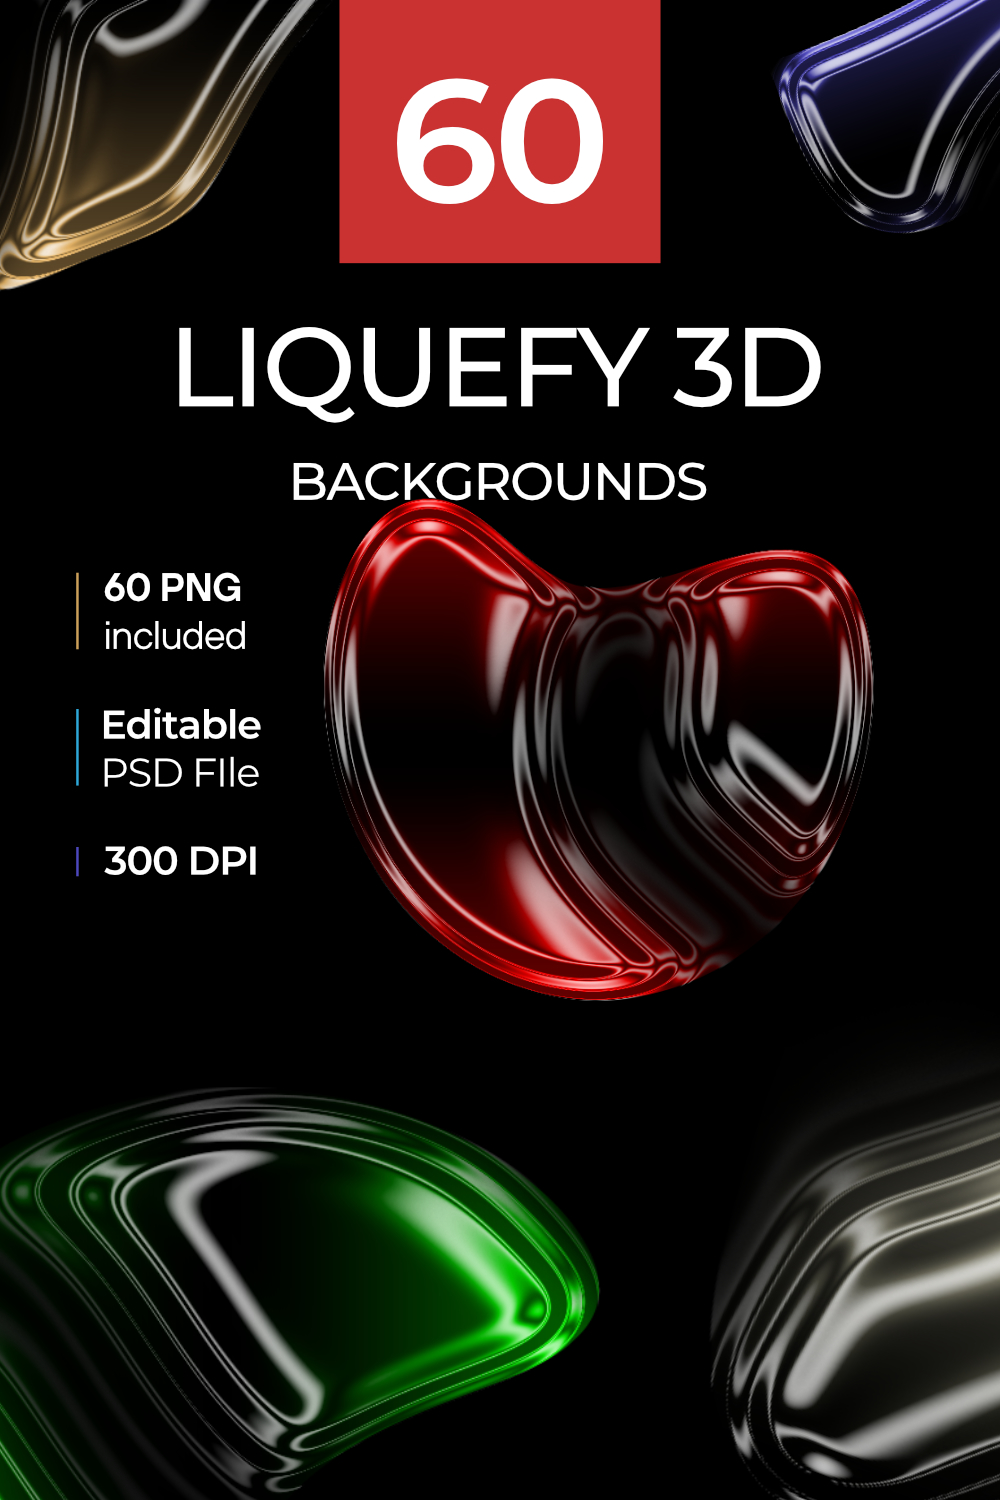 Liquefy 3D backgrounds pinterest preview image.